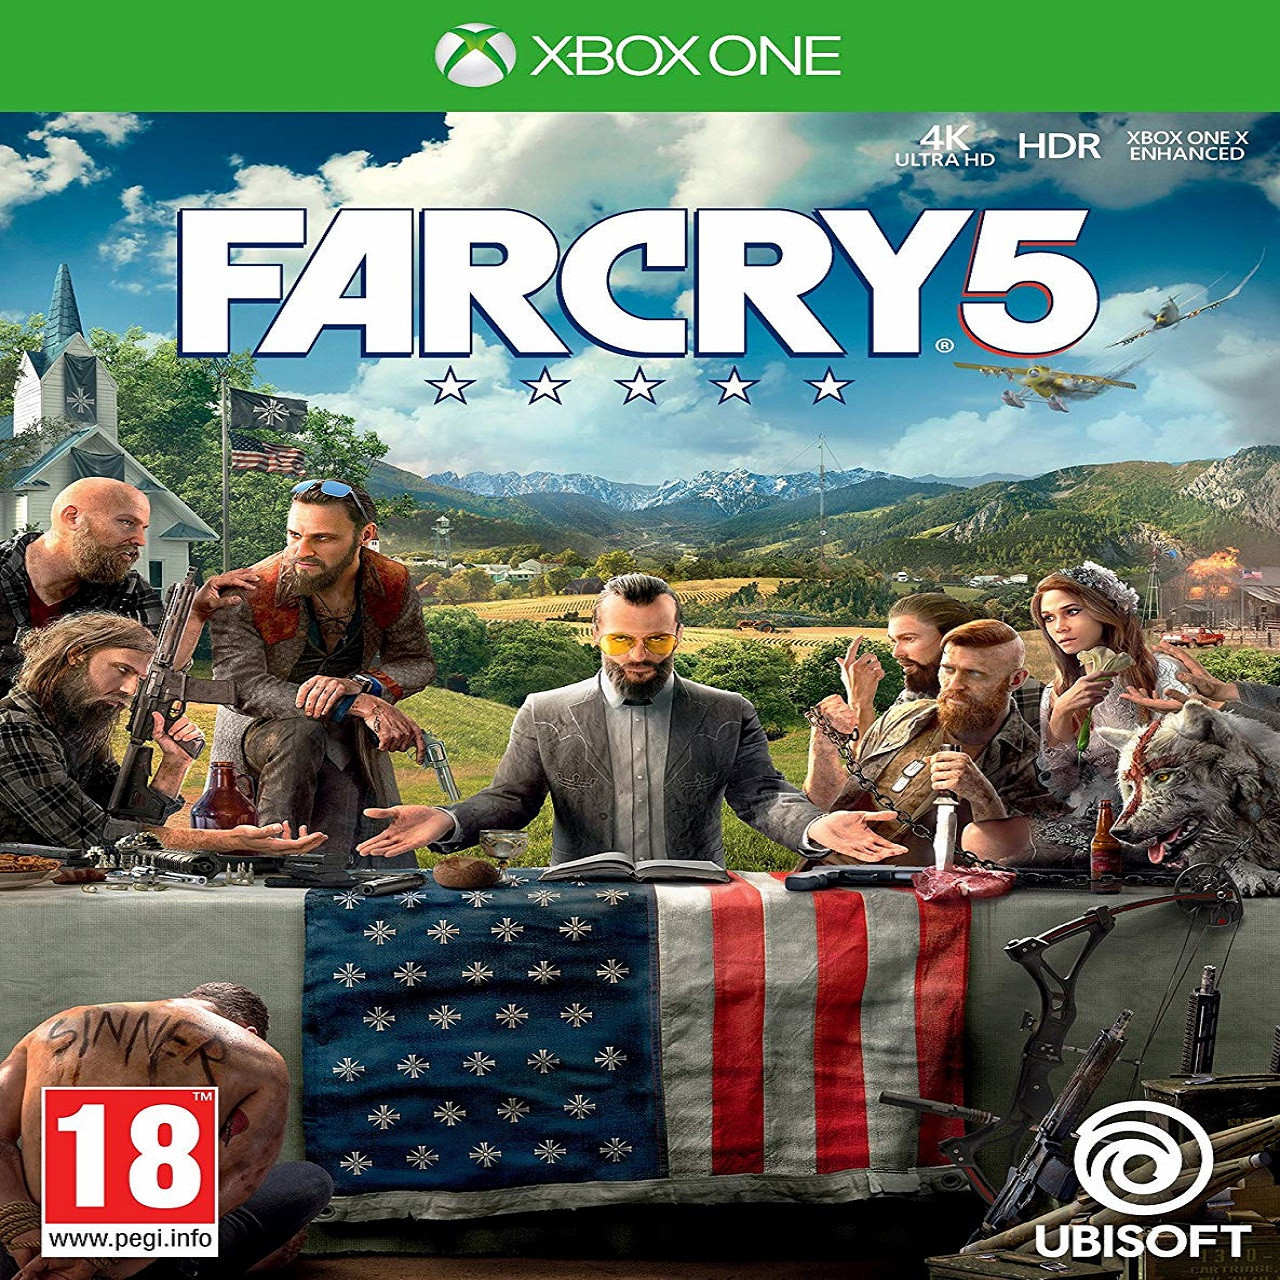 

Far Cry 5 (русская версия) XBOX ONE